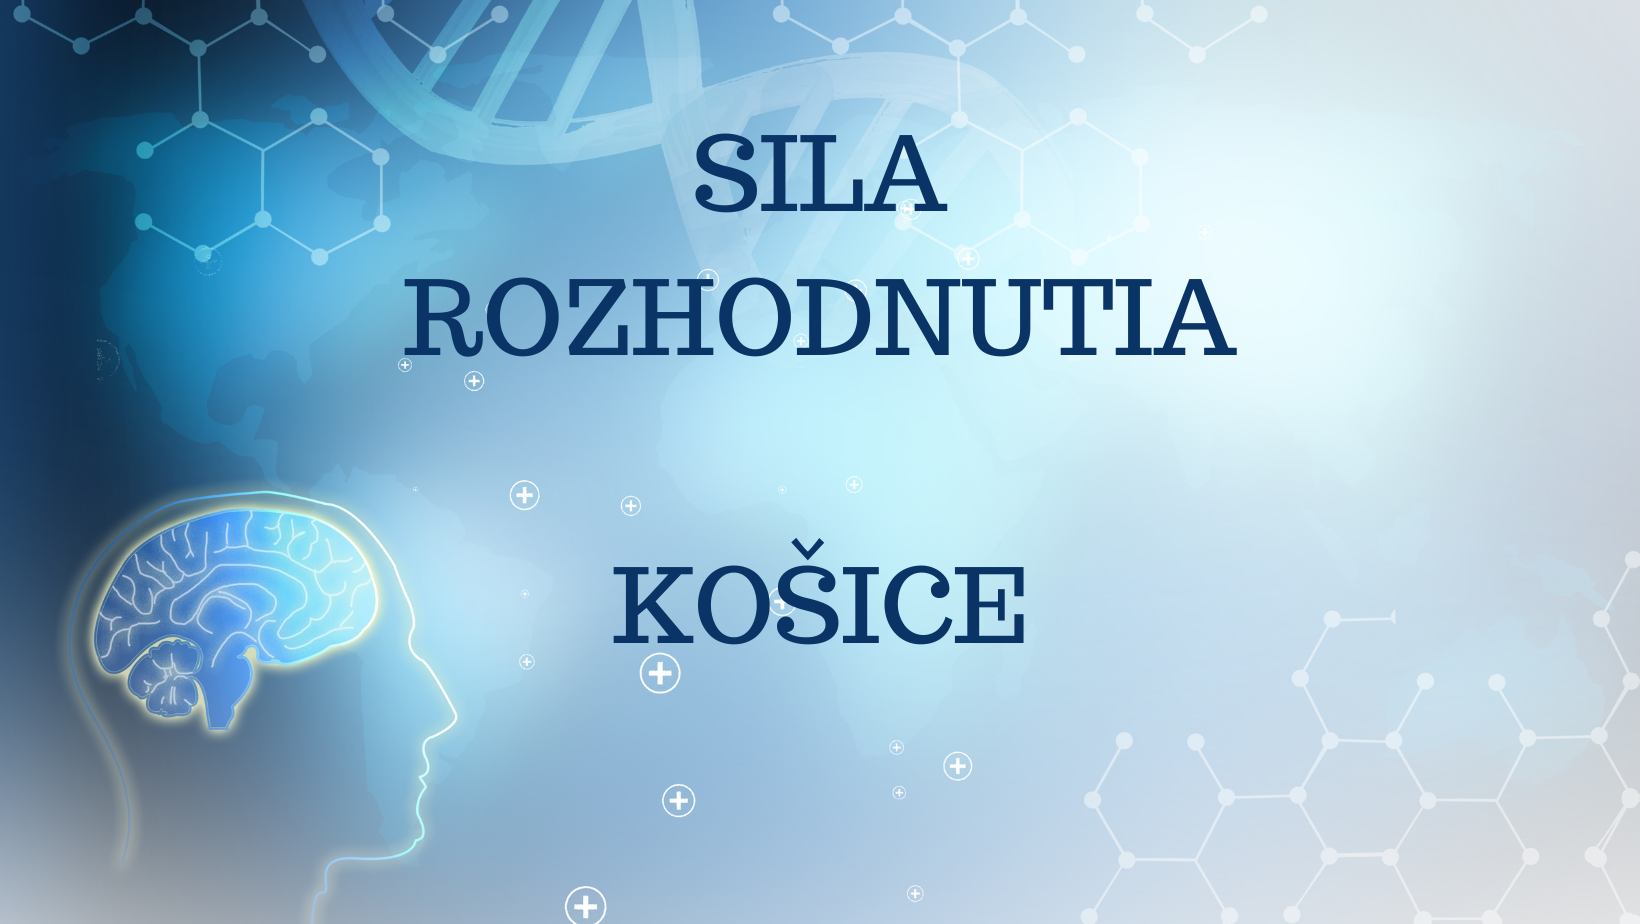 SILA ROZHODNUTIA, Košice (štvrtok/piatok) - plne obsadený, možnosť prihlásiť sa ako náhradník 